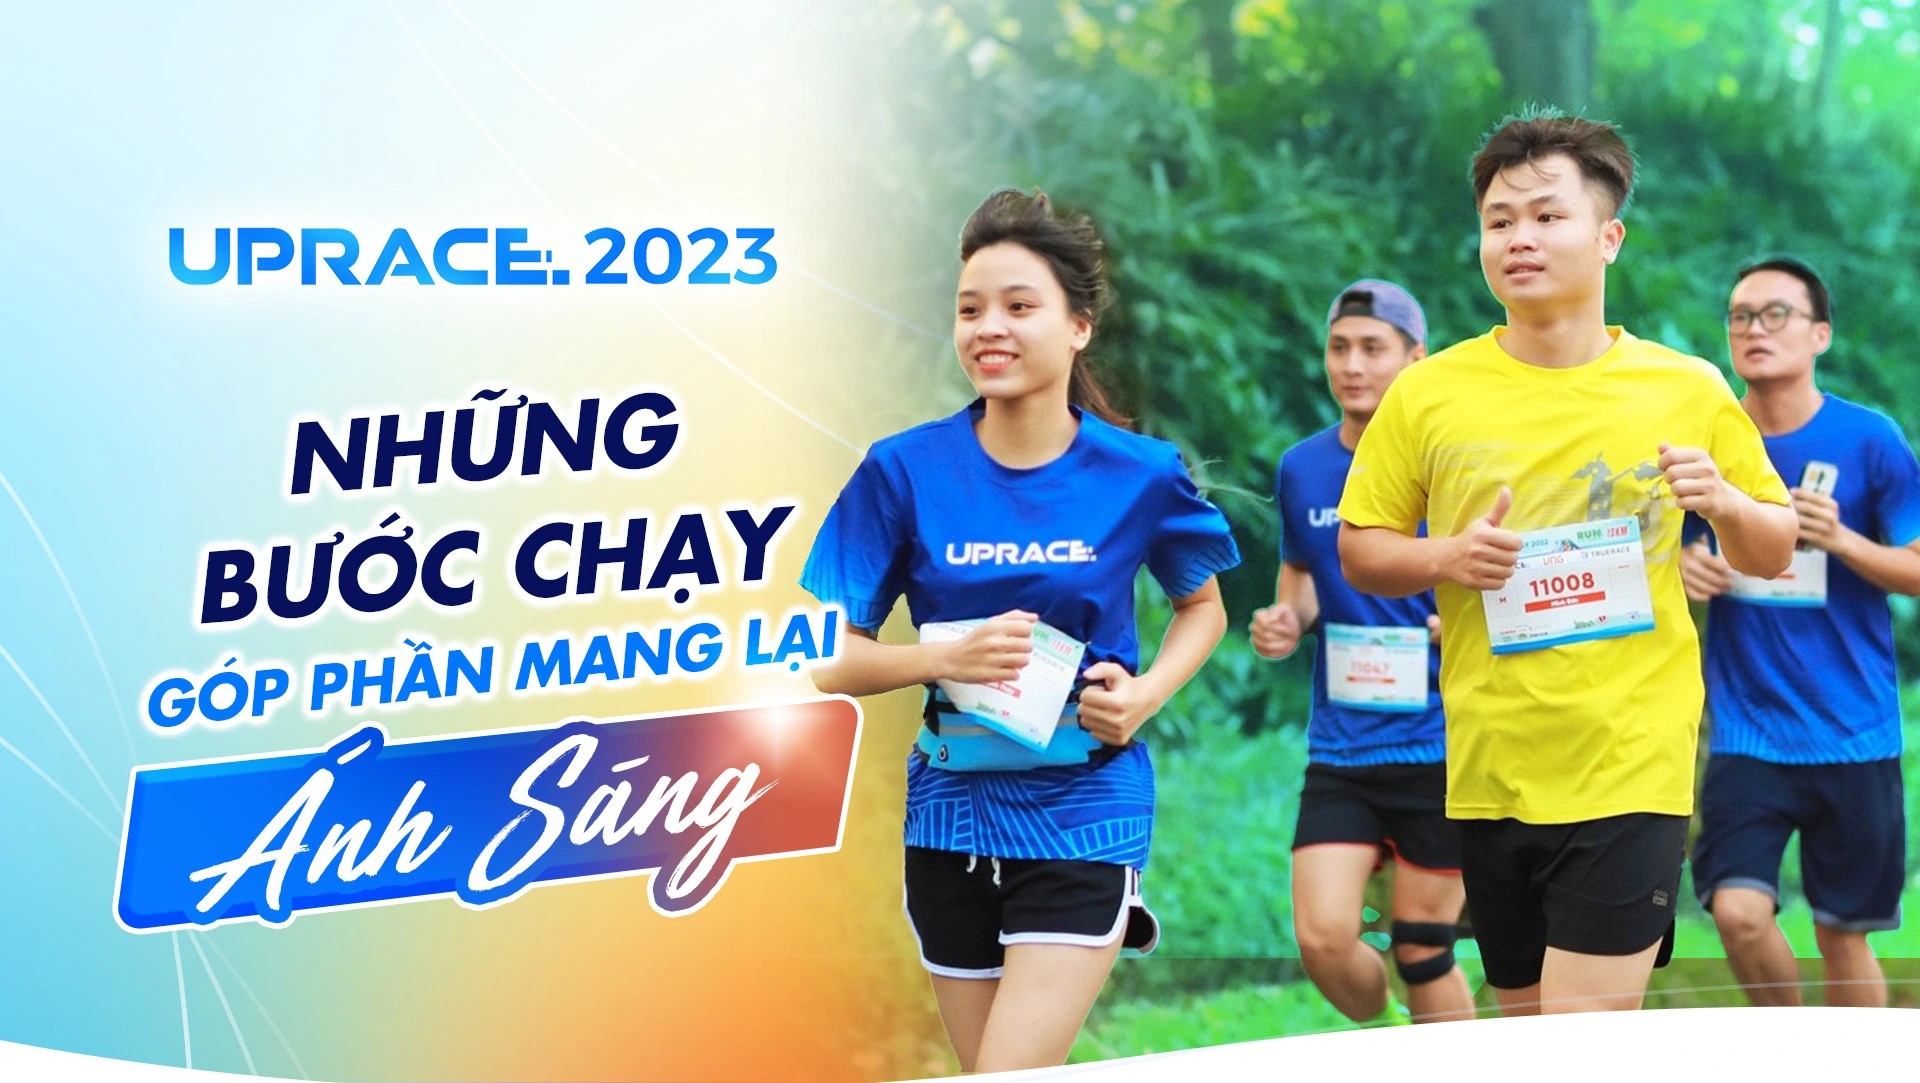 Đoàn viên sinh viên Trường Đại học Hồng Đức  tích cực tham gia Giải chạy UpRace 2023